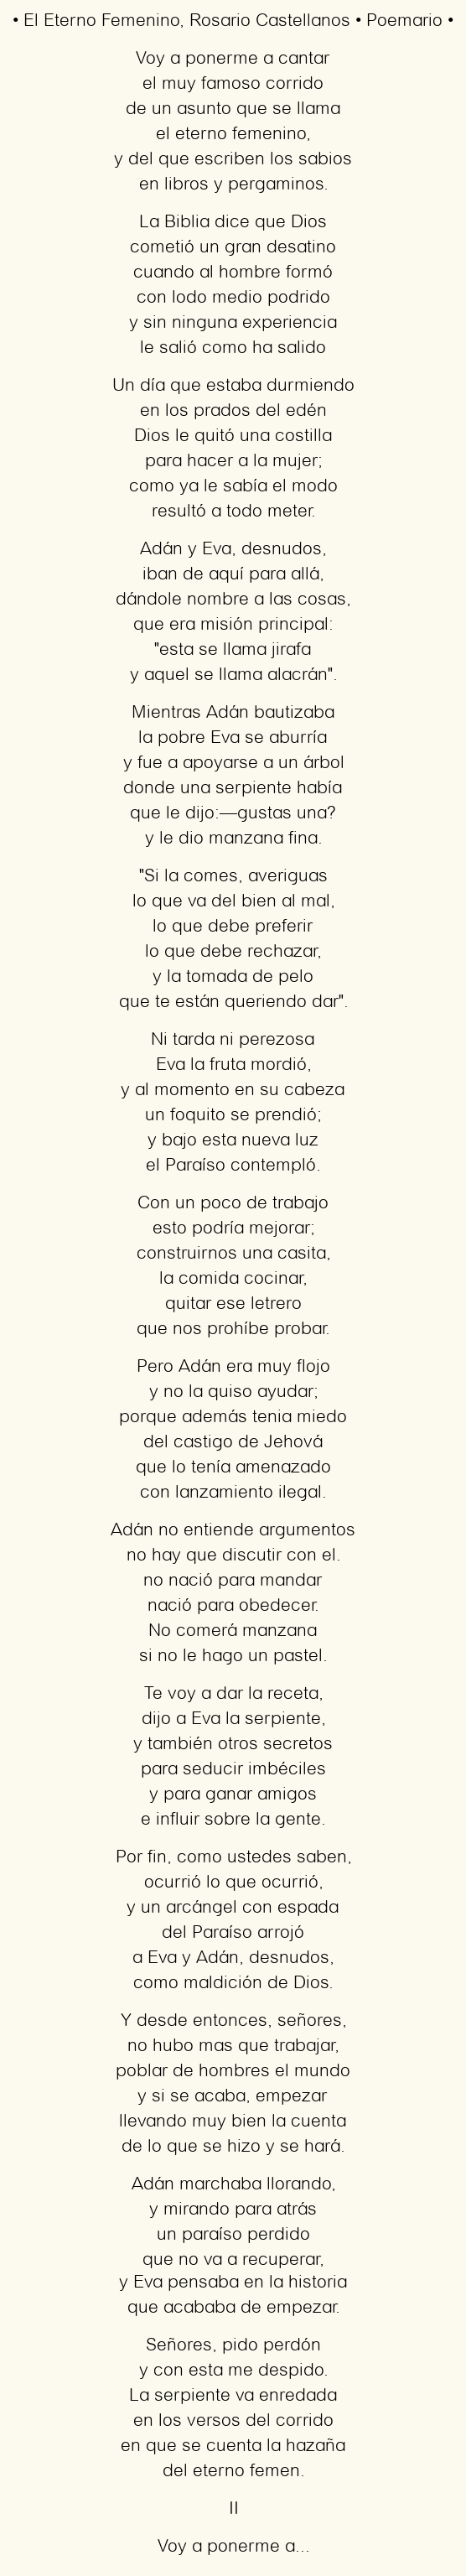 Imagen con el poema El eterno femenino, por Rosario Castellanos